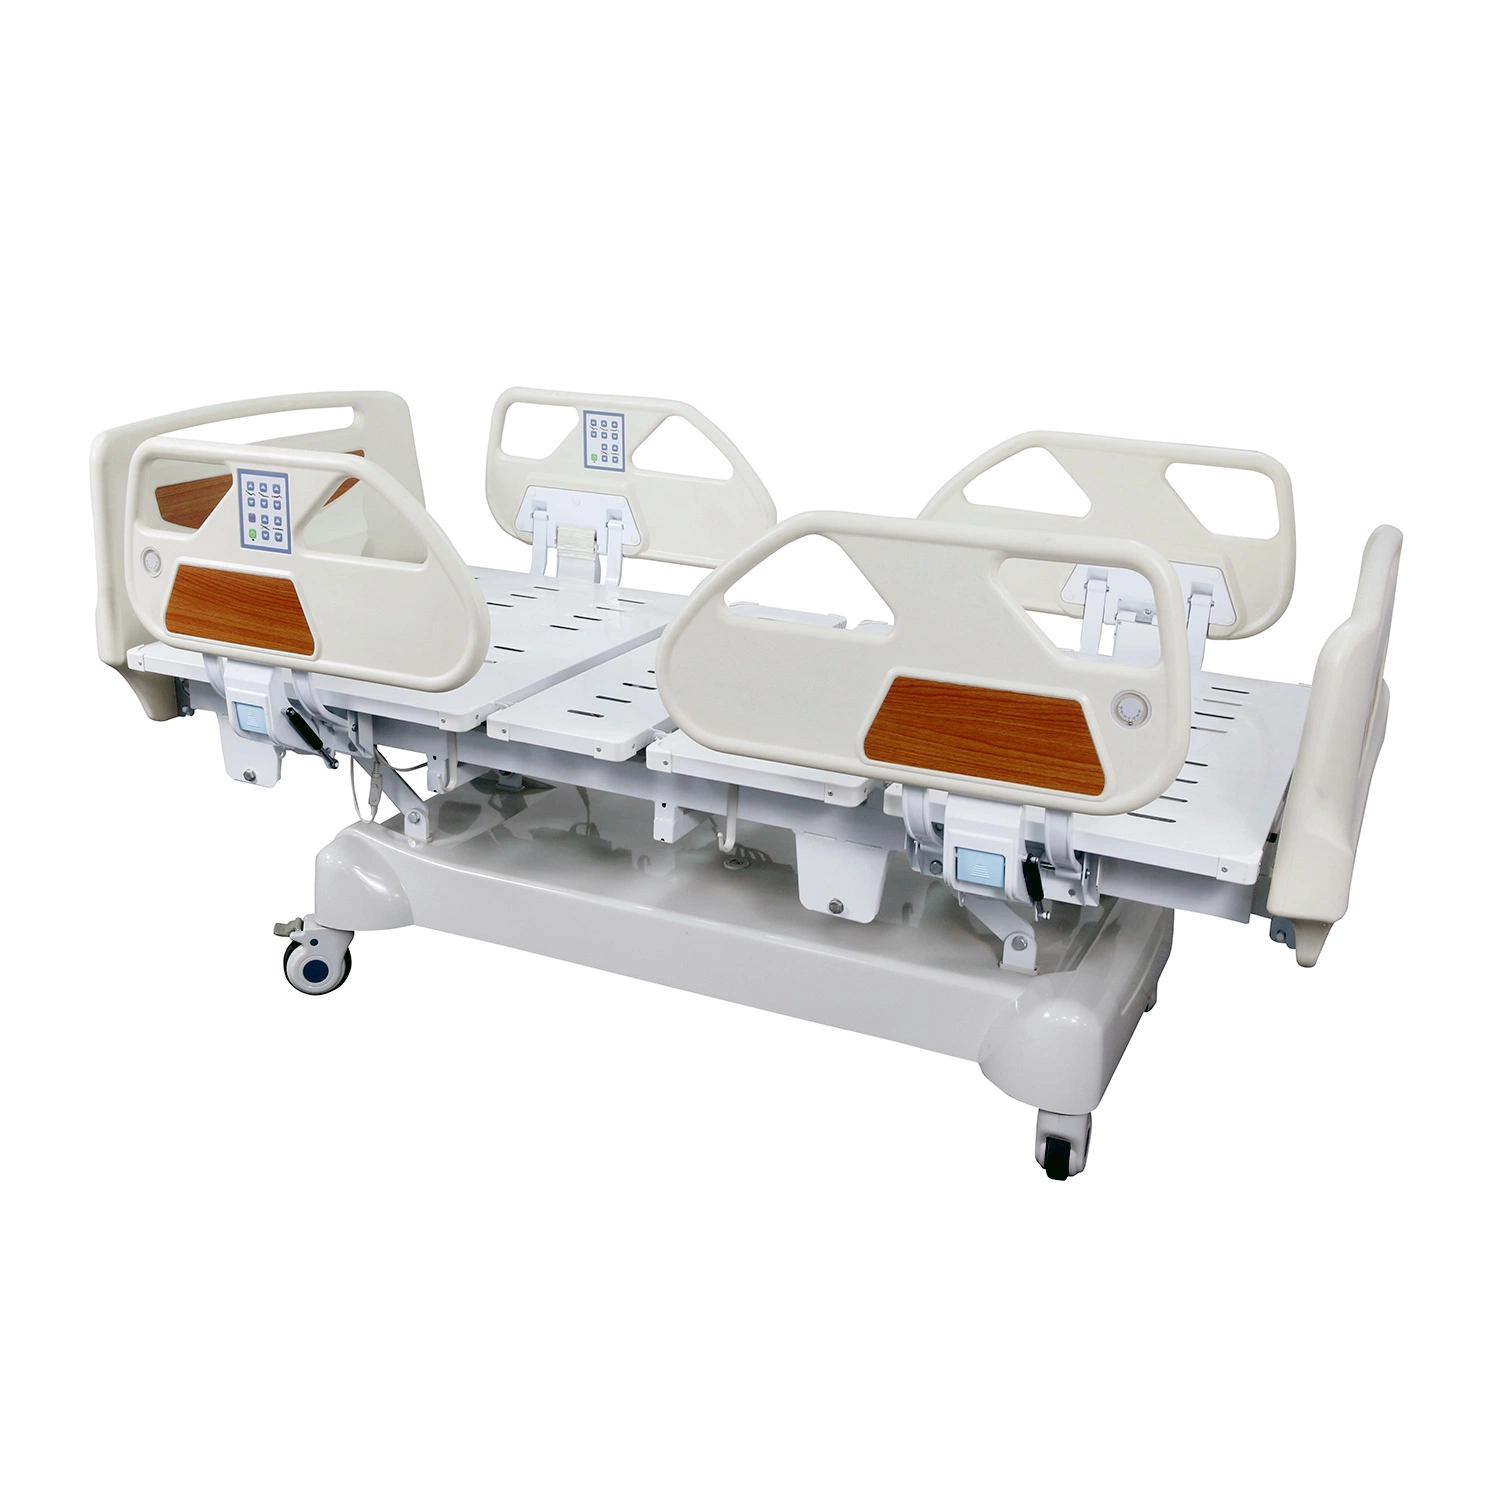 Mobiliário comercial ICU Hospital Bed fabricante Equipamento médico